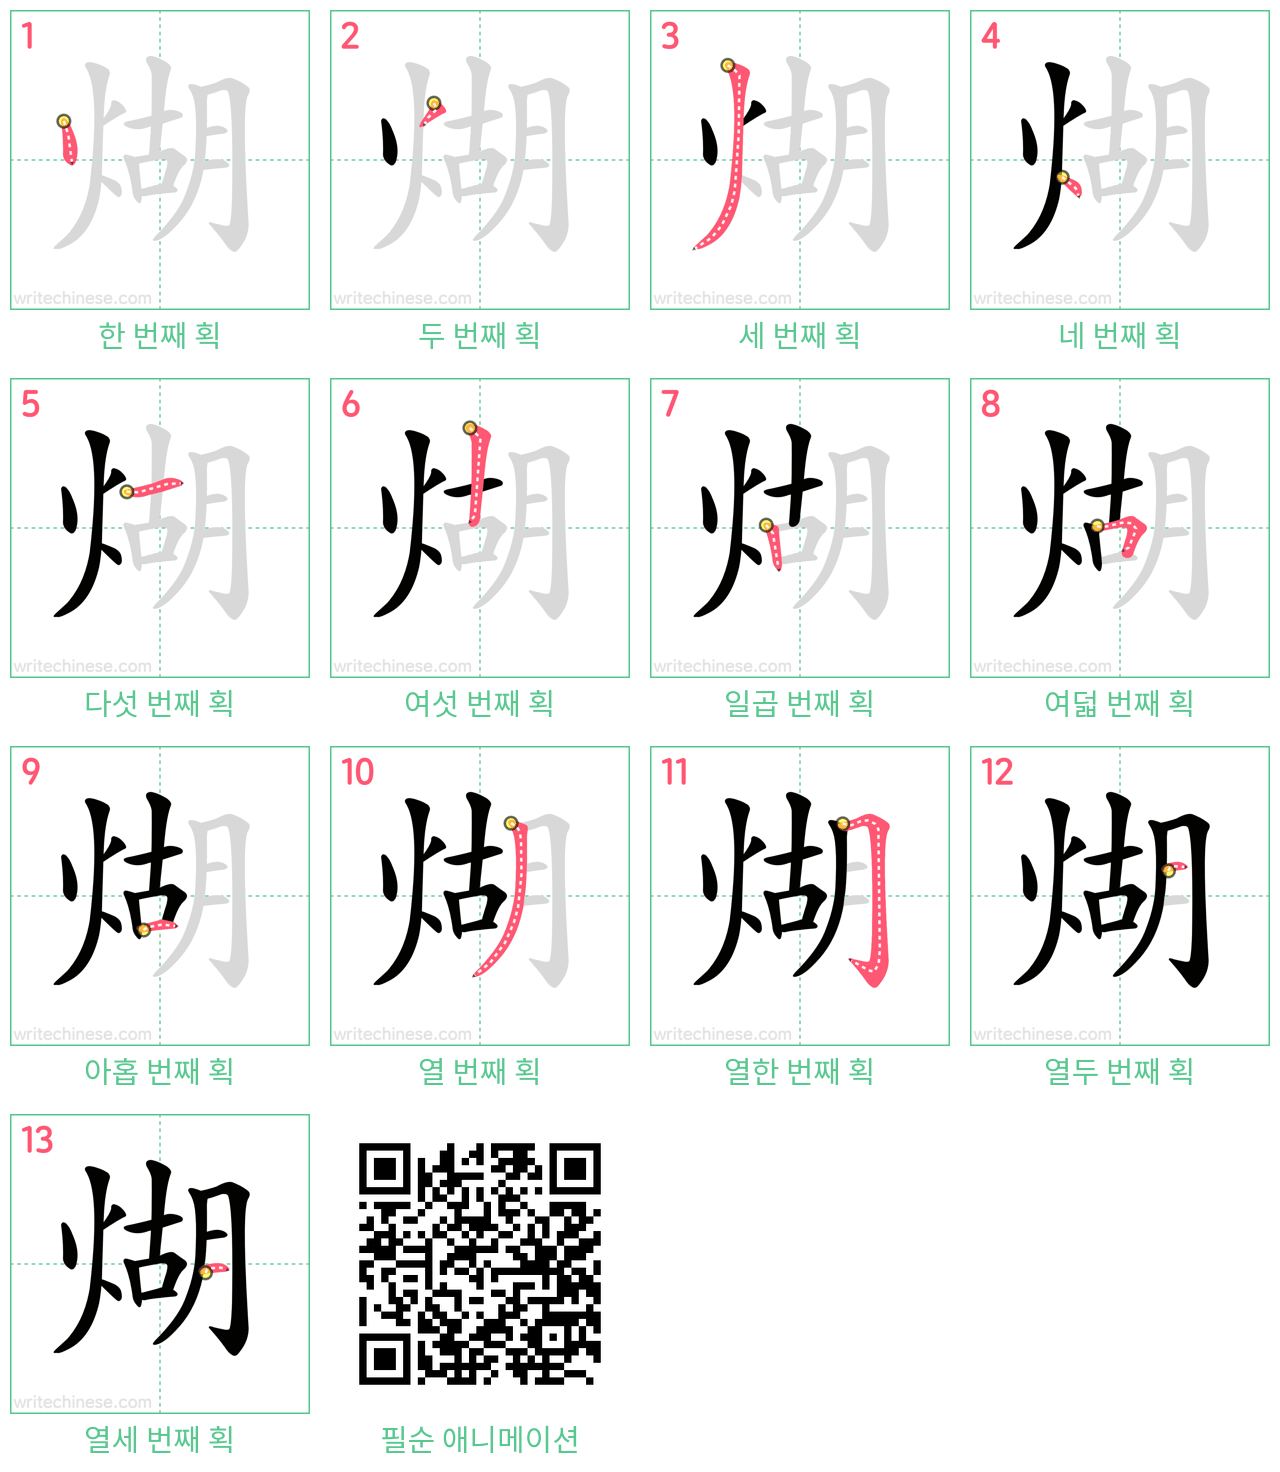 煳 step-by-step stroke order diagrams